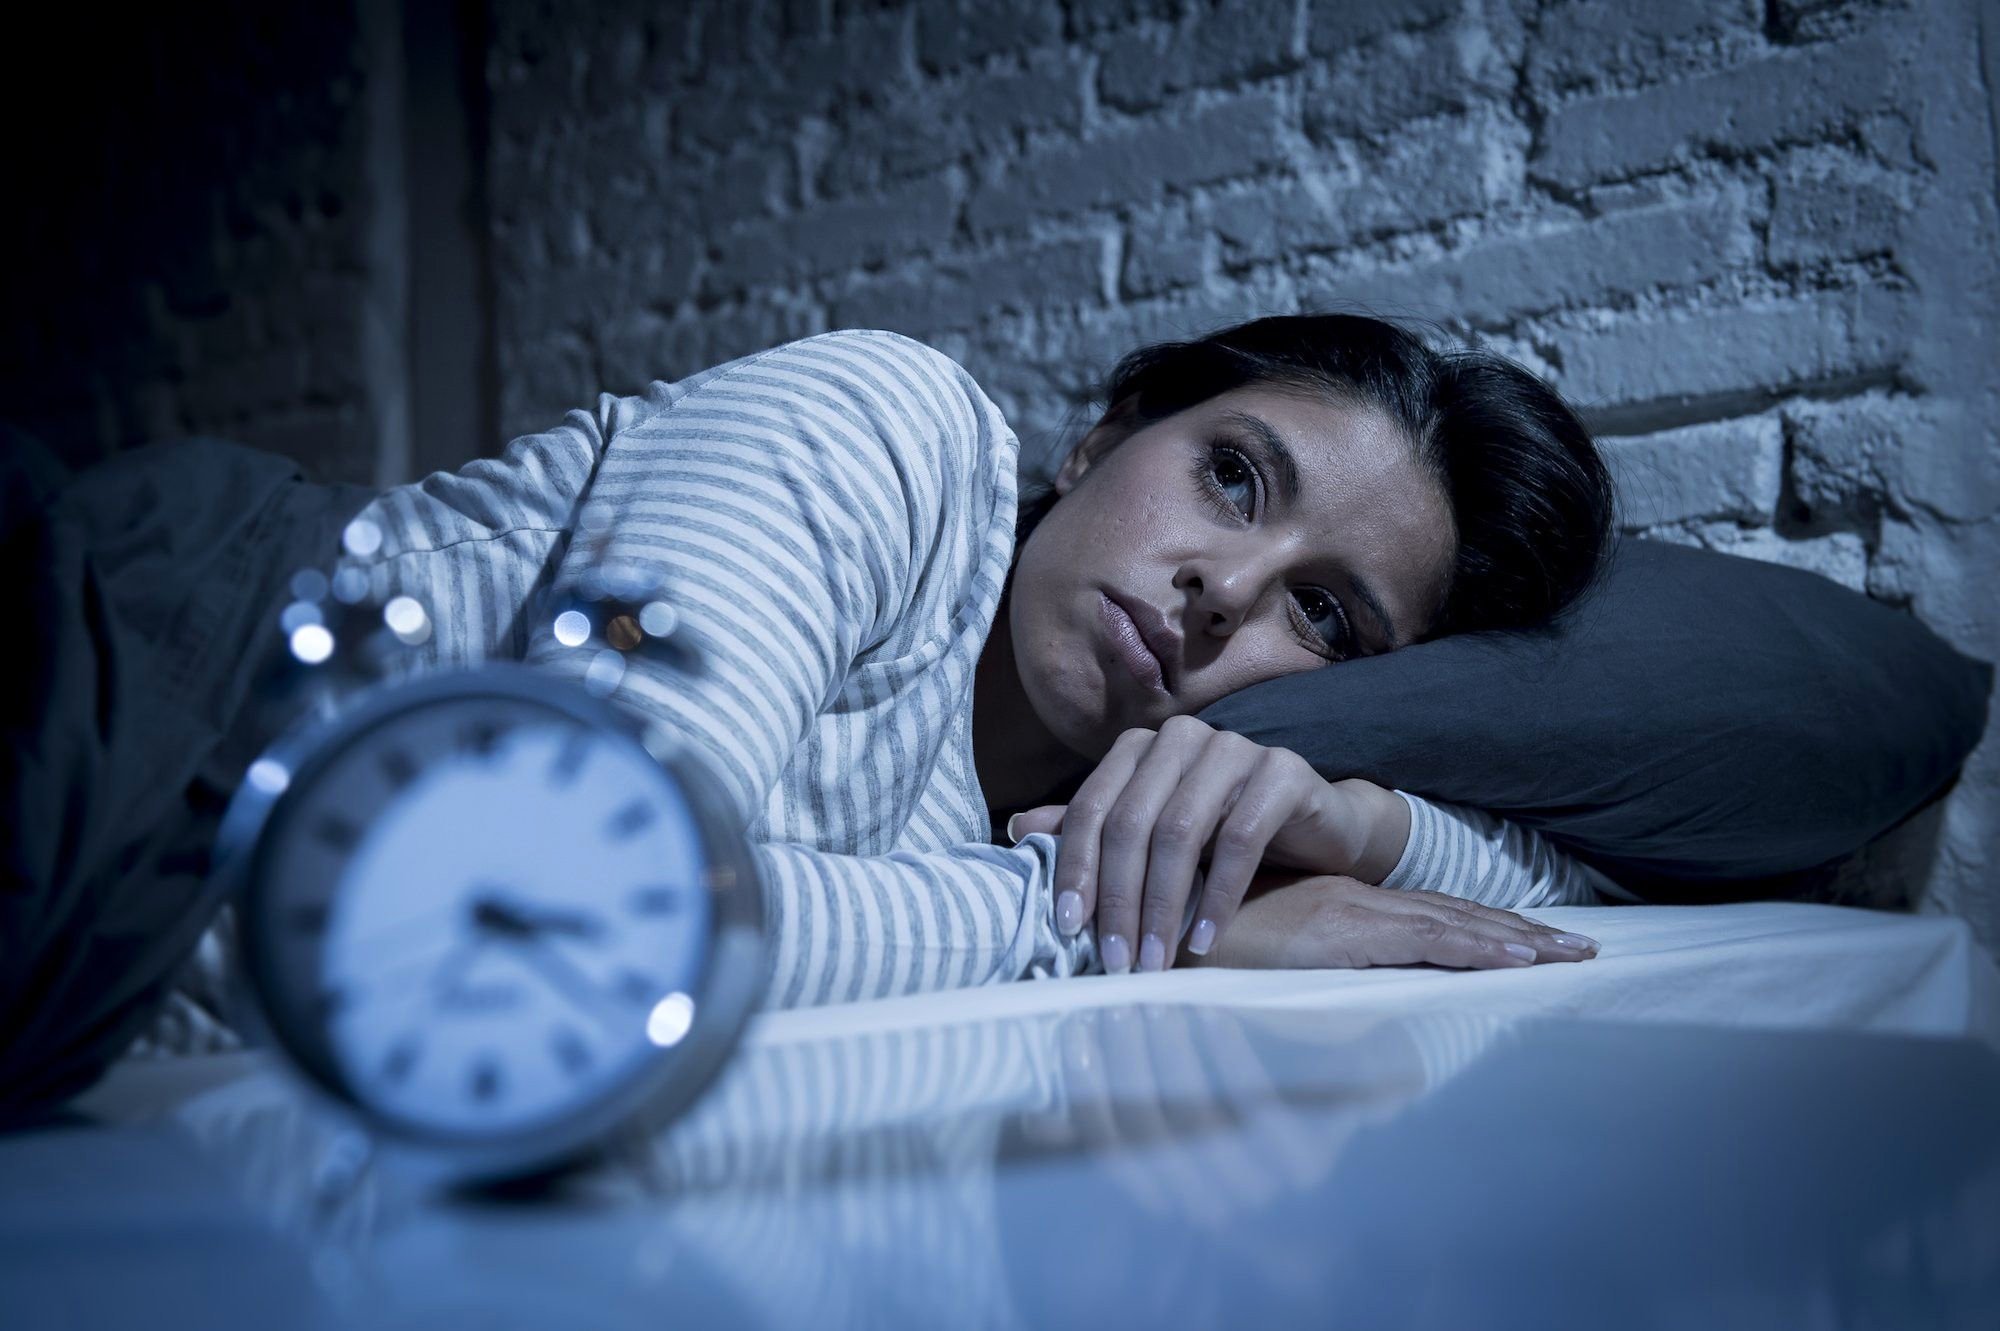 Գիտնականները պարզել են, որ անբավարար քունը հանգեցնում է լուրջ առողջական խնդիրների